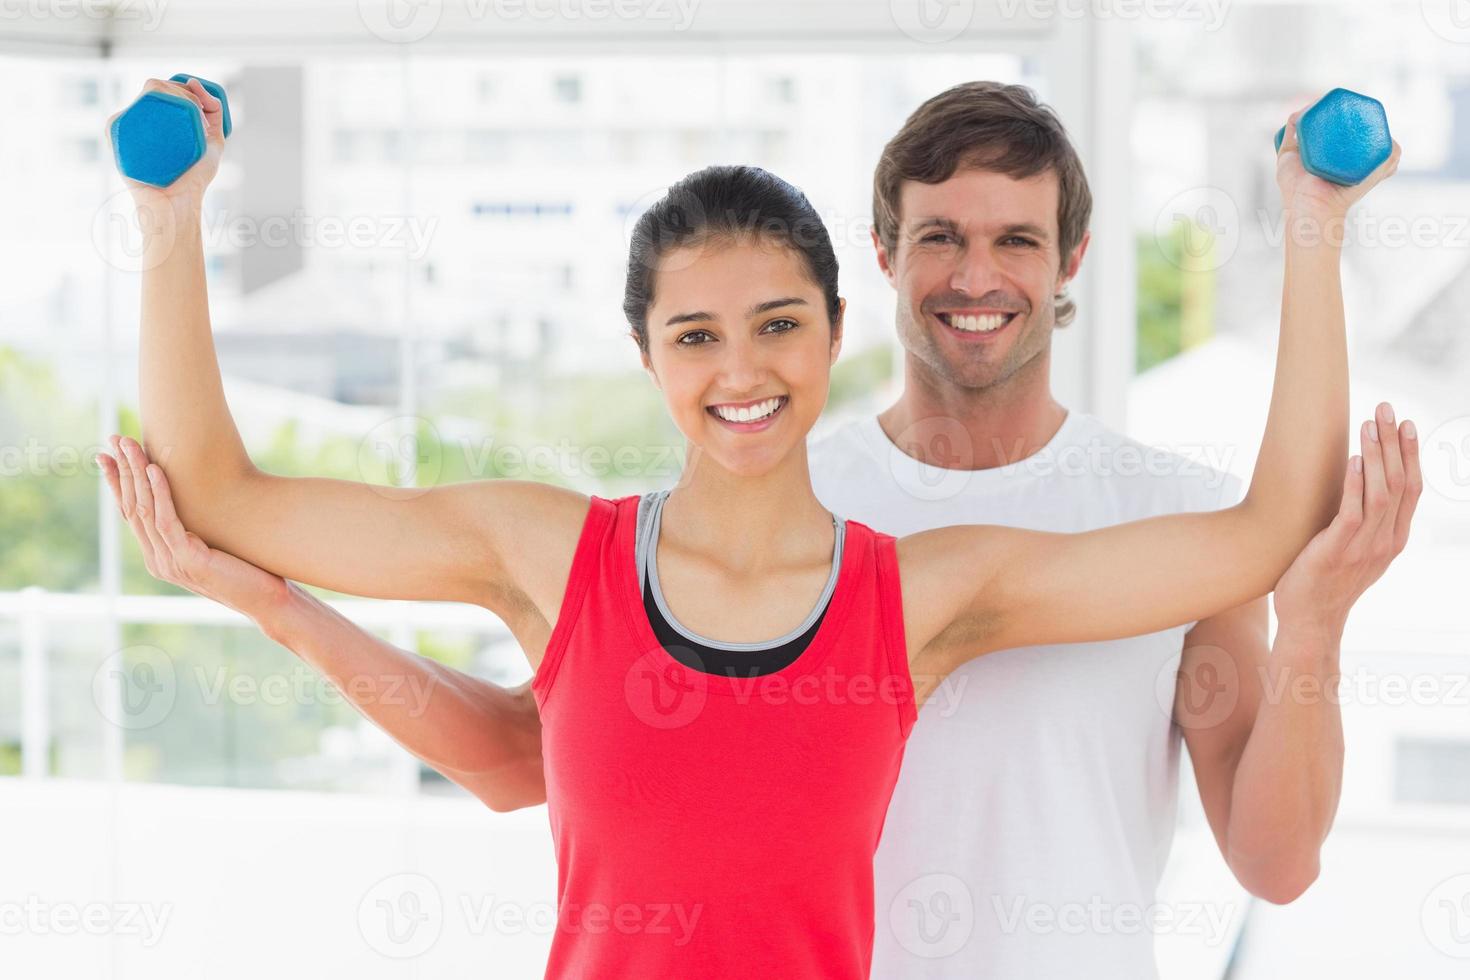 instrutor sorridente com mulher levantando pesos do dumbbell foto